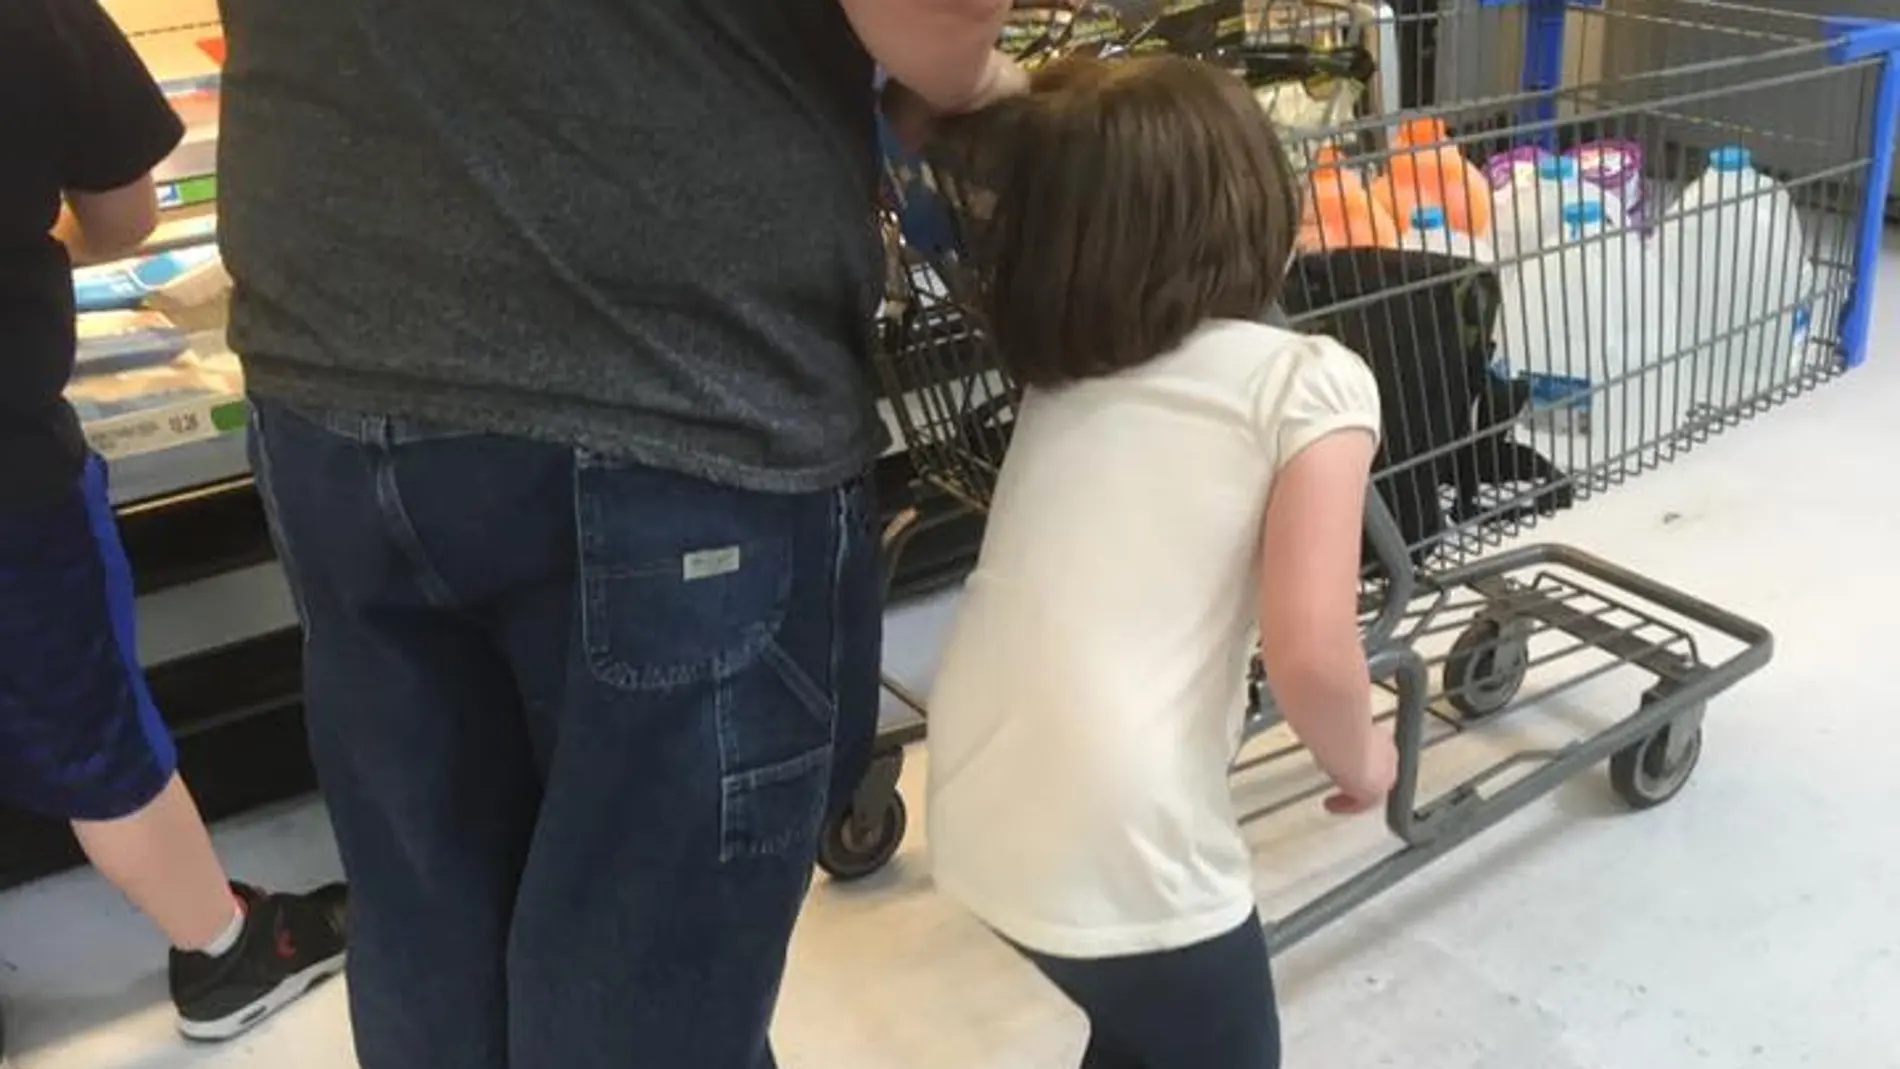 La imagen de un padre llevando a su hija con el pelo atado al carro de la compra se vuelve viral